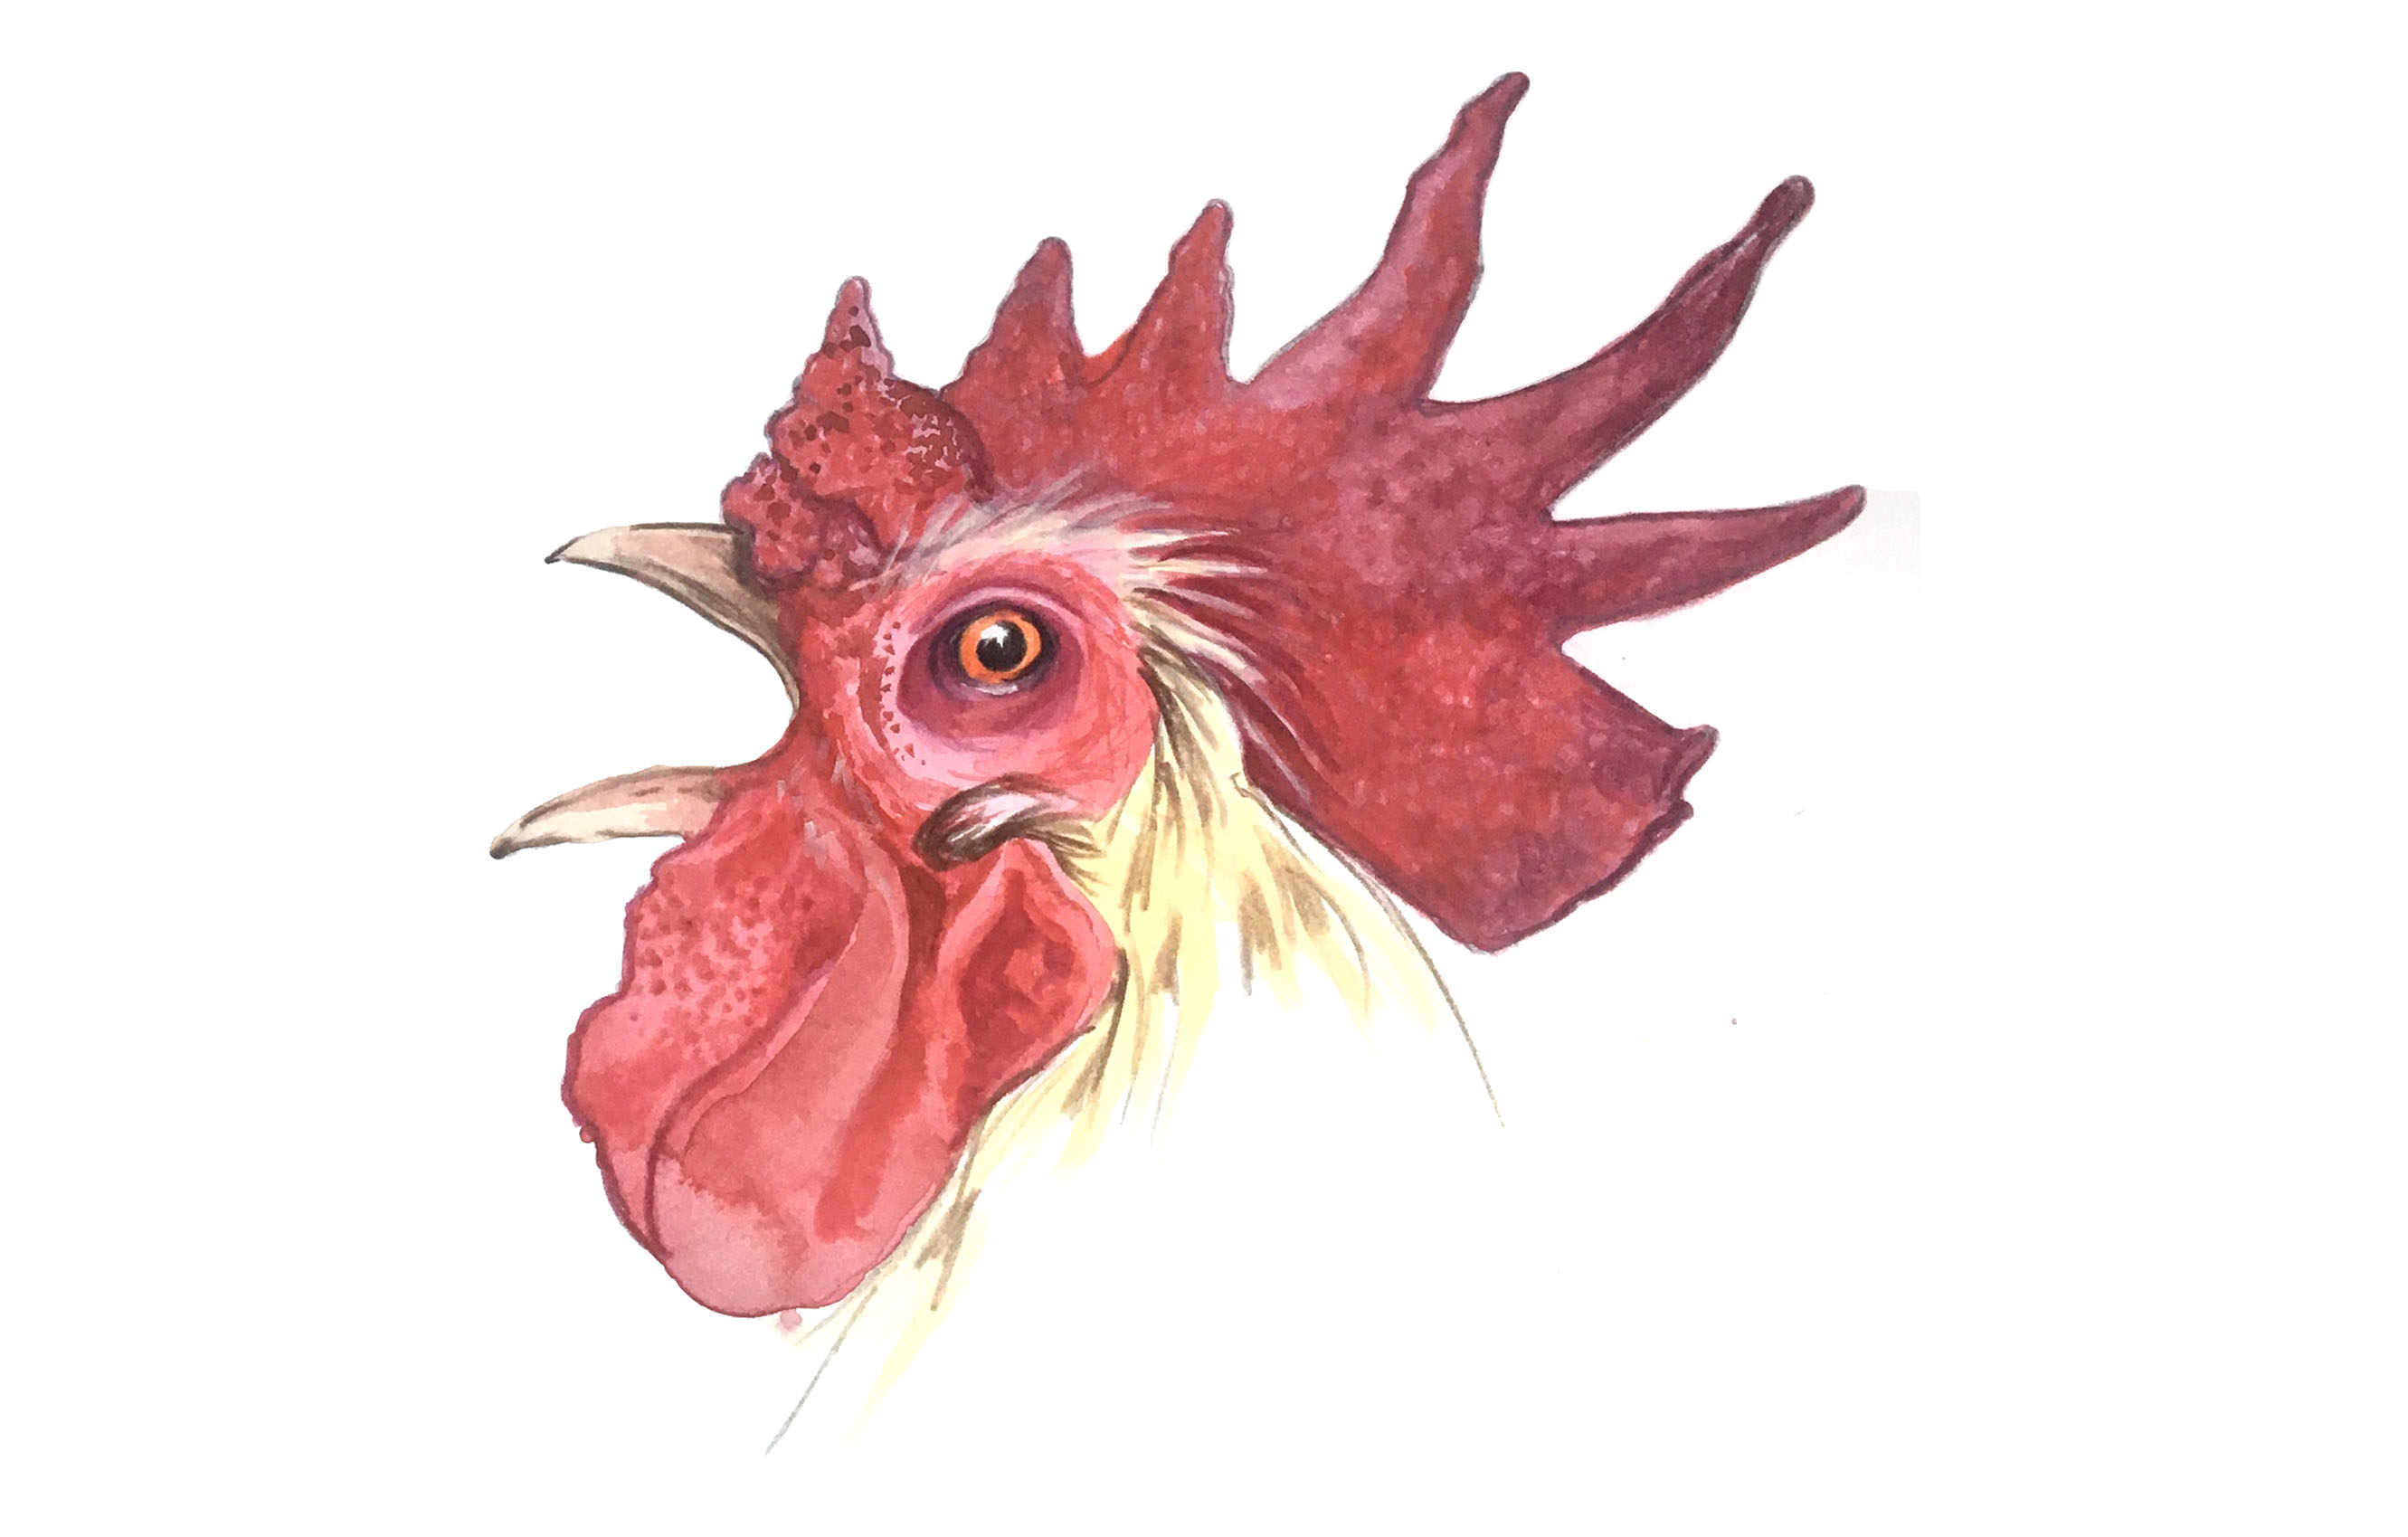 960px version of Chicken-Cluck.jpg